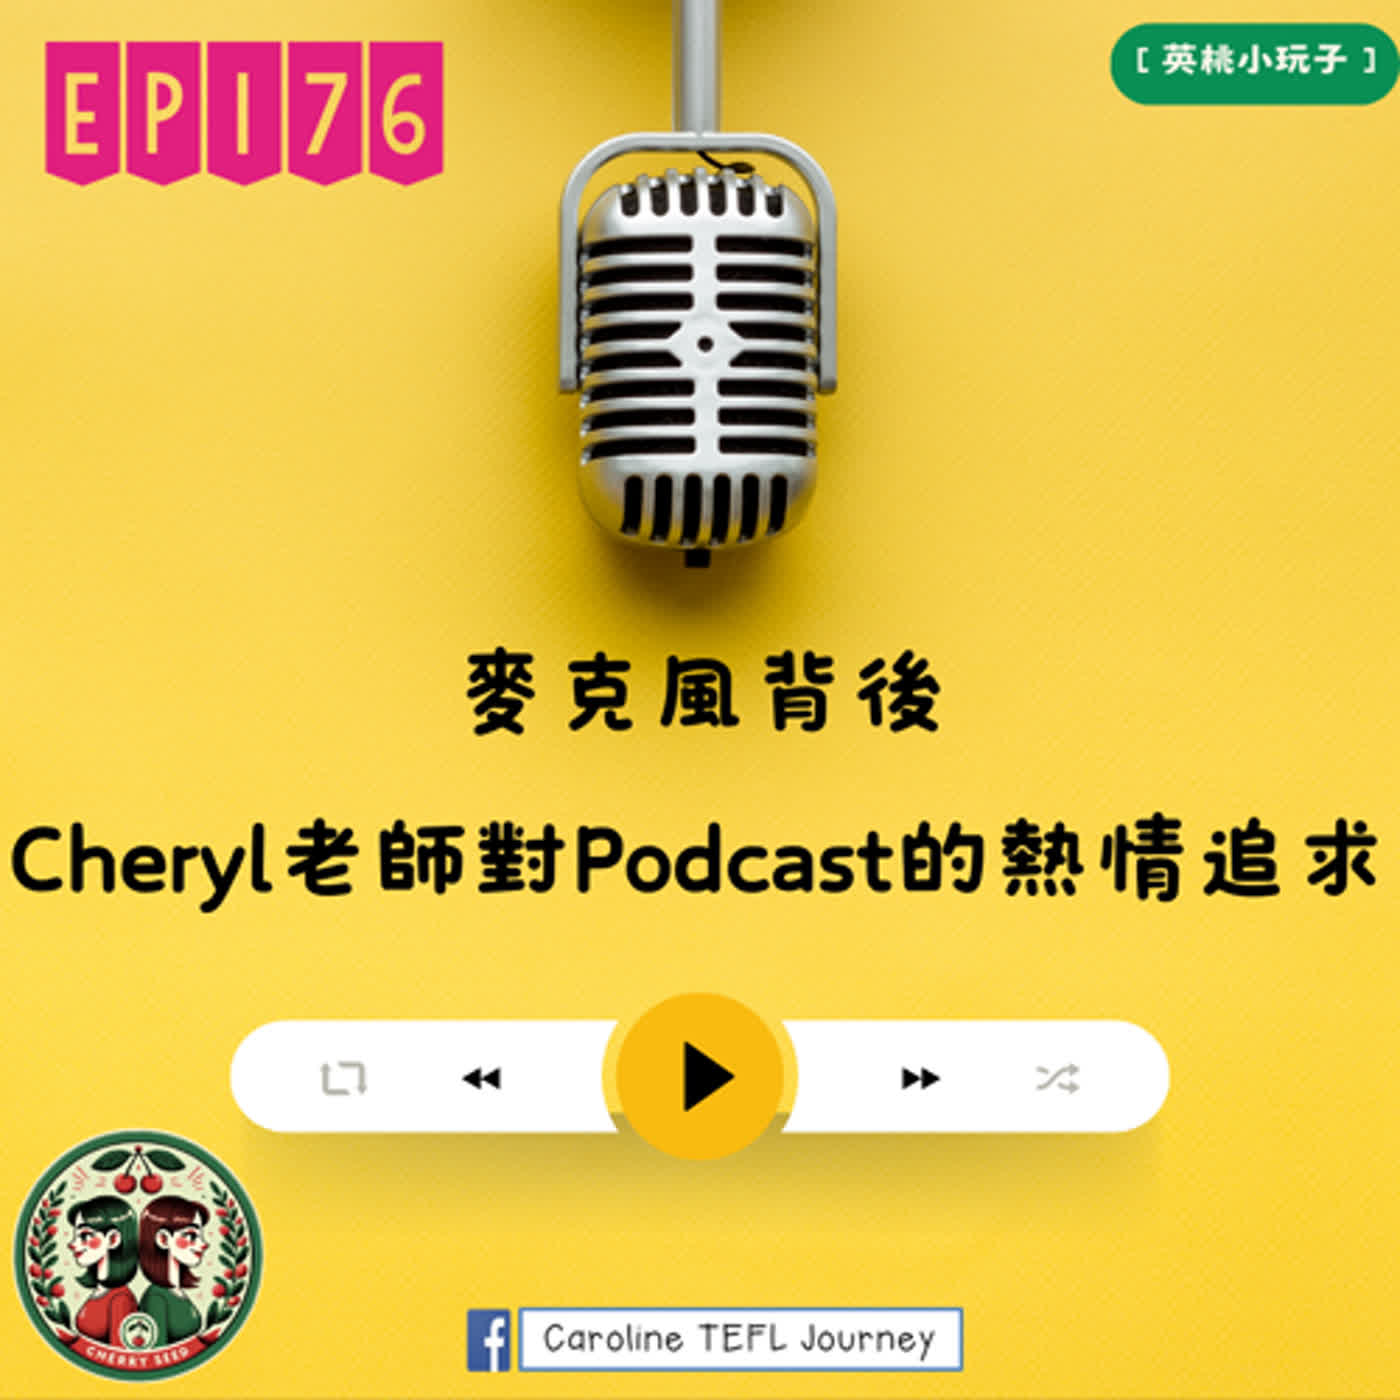 【英桃小玩子】EP176 麥克風背後:Cheryl老師對Podcast的熱情追求